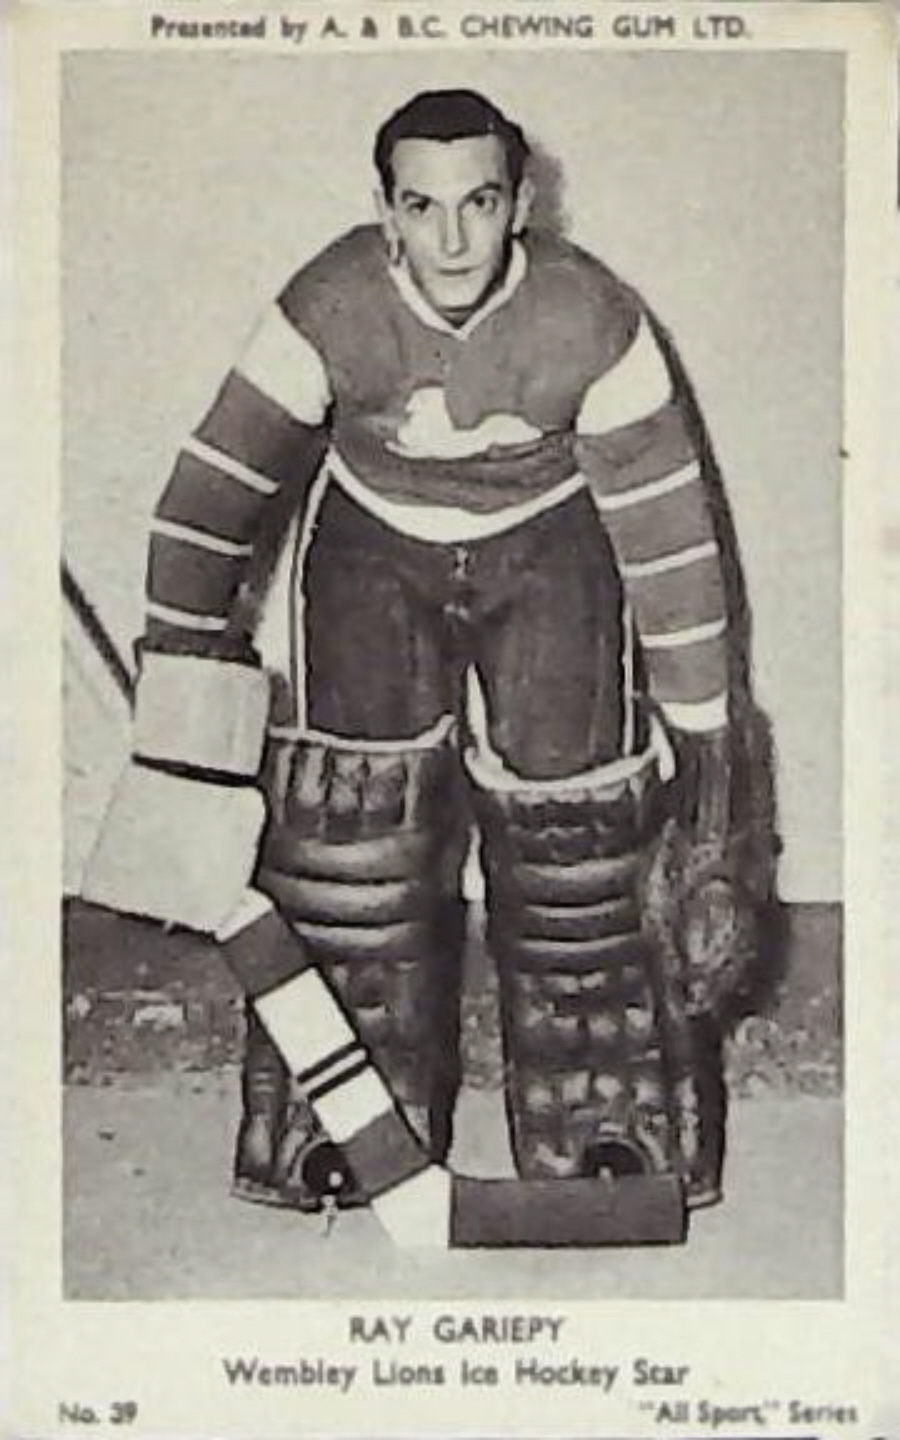 A & B C 1954 All Sports Ice Hockey Ray Gariepy No 39